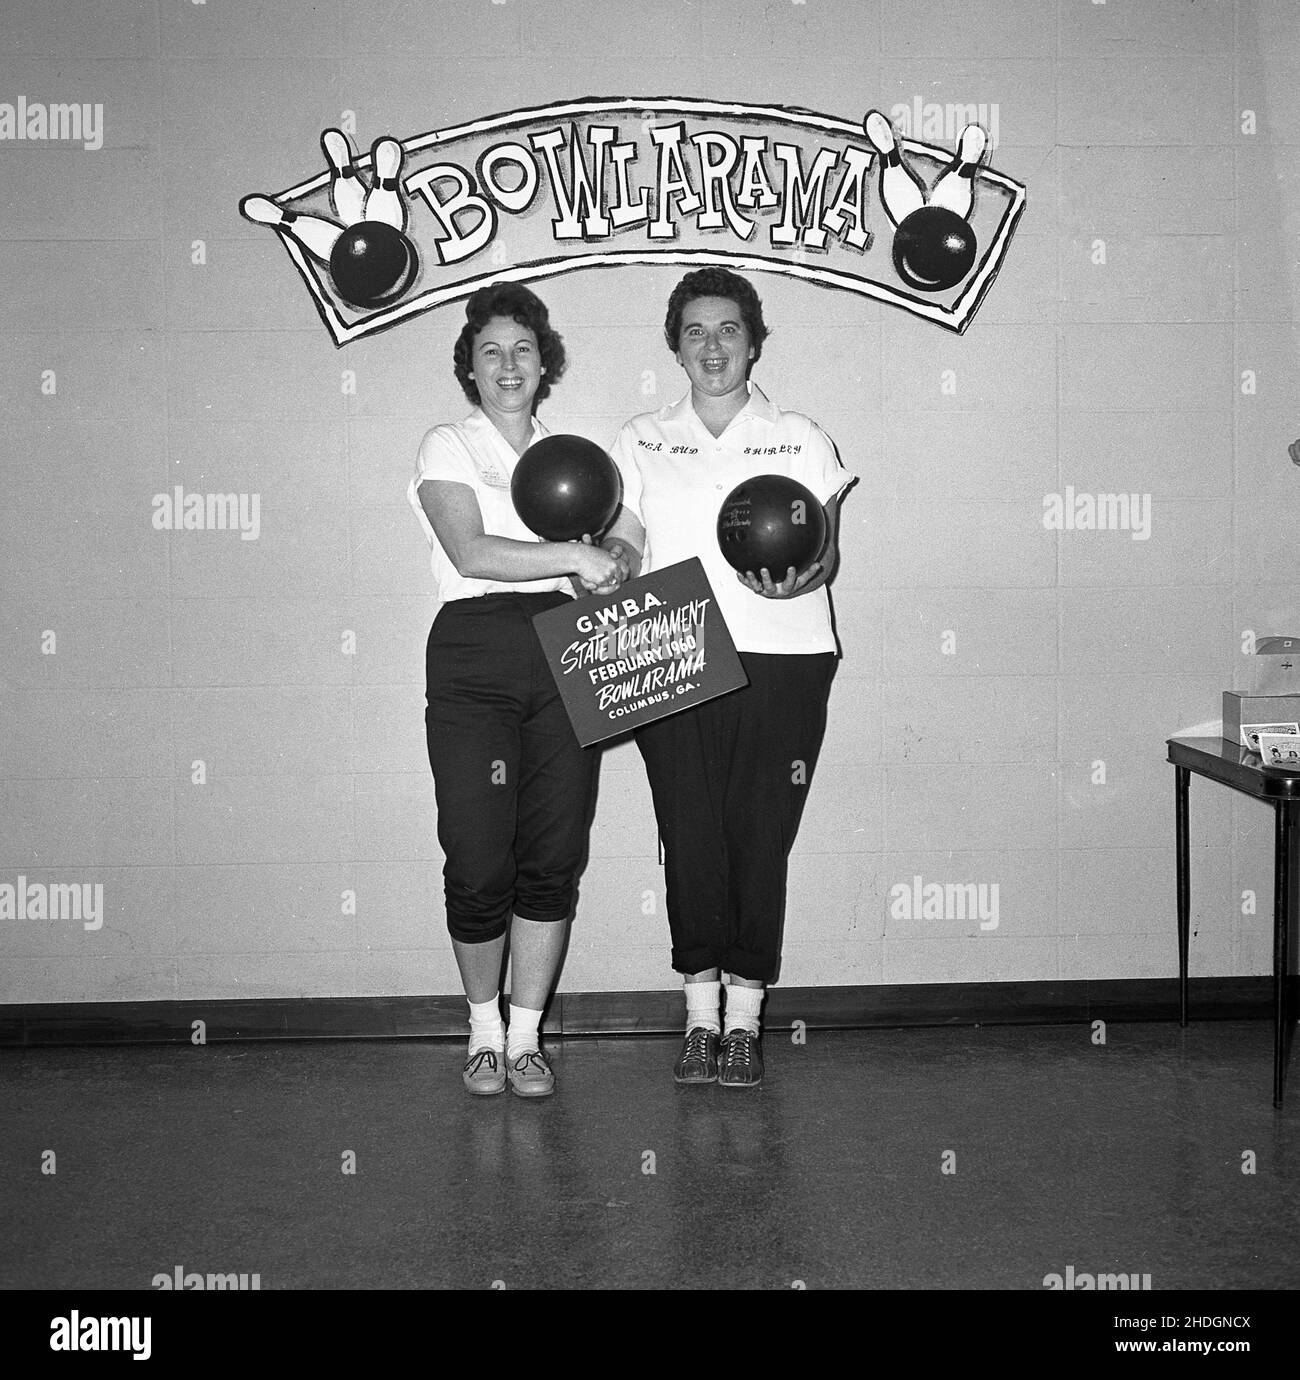 1960, storico, due donne adulte dieci-pin bowler nel loro kit di squadra e tenendo le loro palline da bowling, posa per una foto, Columbus, Ohio, USA. Stanno partecipando ad una 'Bowlarama' - segno sul muro dietro di loro - una competizione di bowling tra le squadre. Negli anni 1950s e 60s, oltre ad un popolare passatempo di lessiure negli Stati Uniti, tenpin è stato anche uno sport agonistico amatoriale, con una struttura di campionato organizzata e competitiva, con squadre sia maschili che femminili. La Professional Bowlers Association of America (PBA) è stata fondata nel 1958. Foto Stock